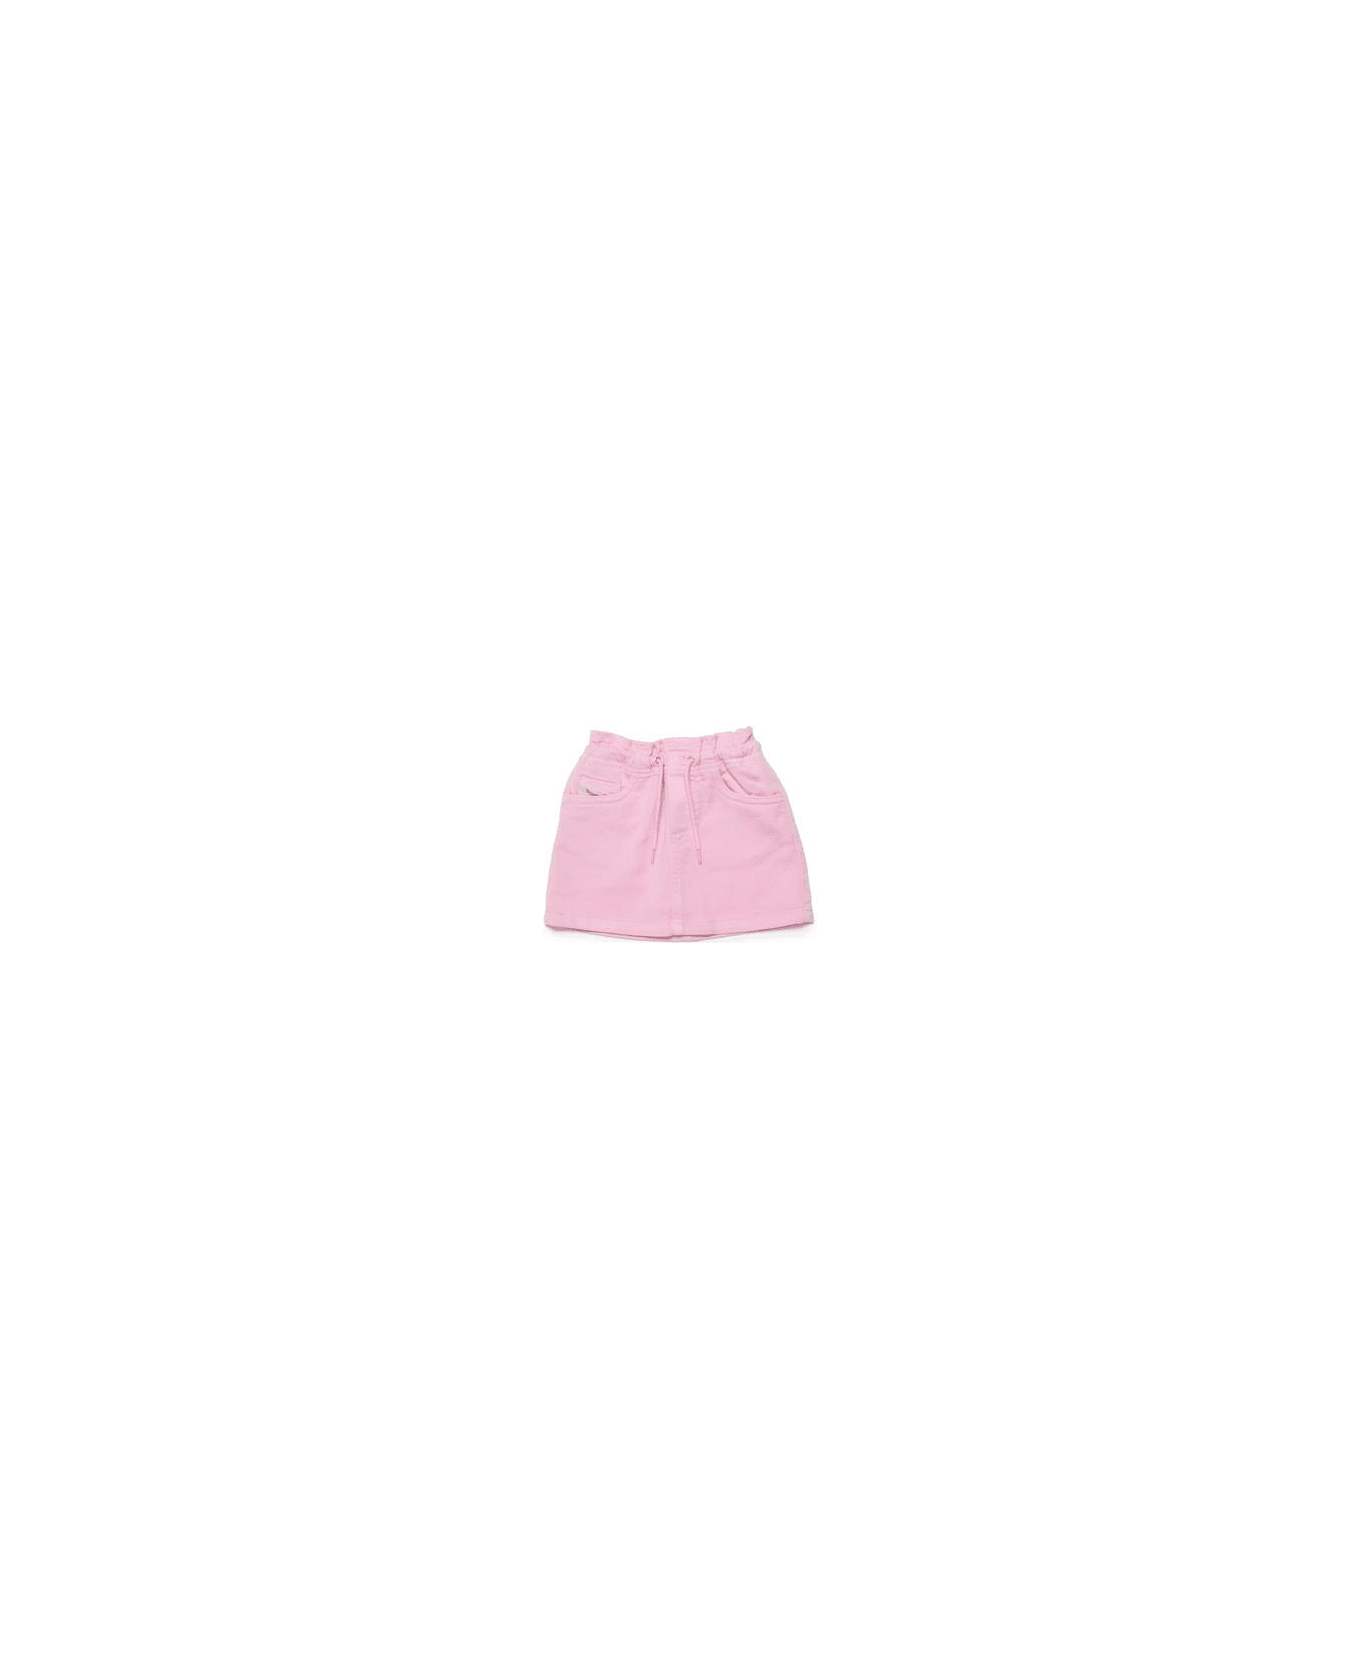 Diesel Gazib Jjj Skirt Diesel Pastel Pink Denim Skirt With Drawstrings - Pastel pink